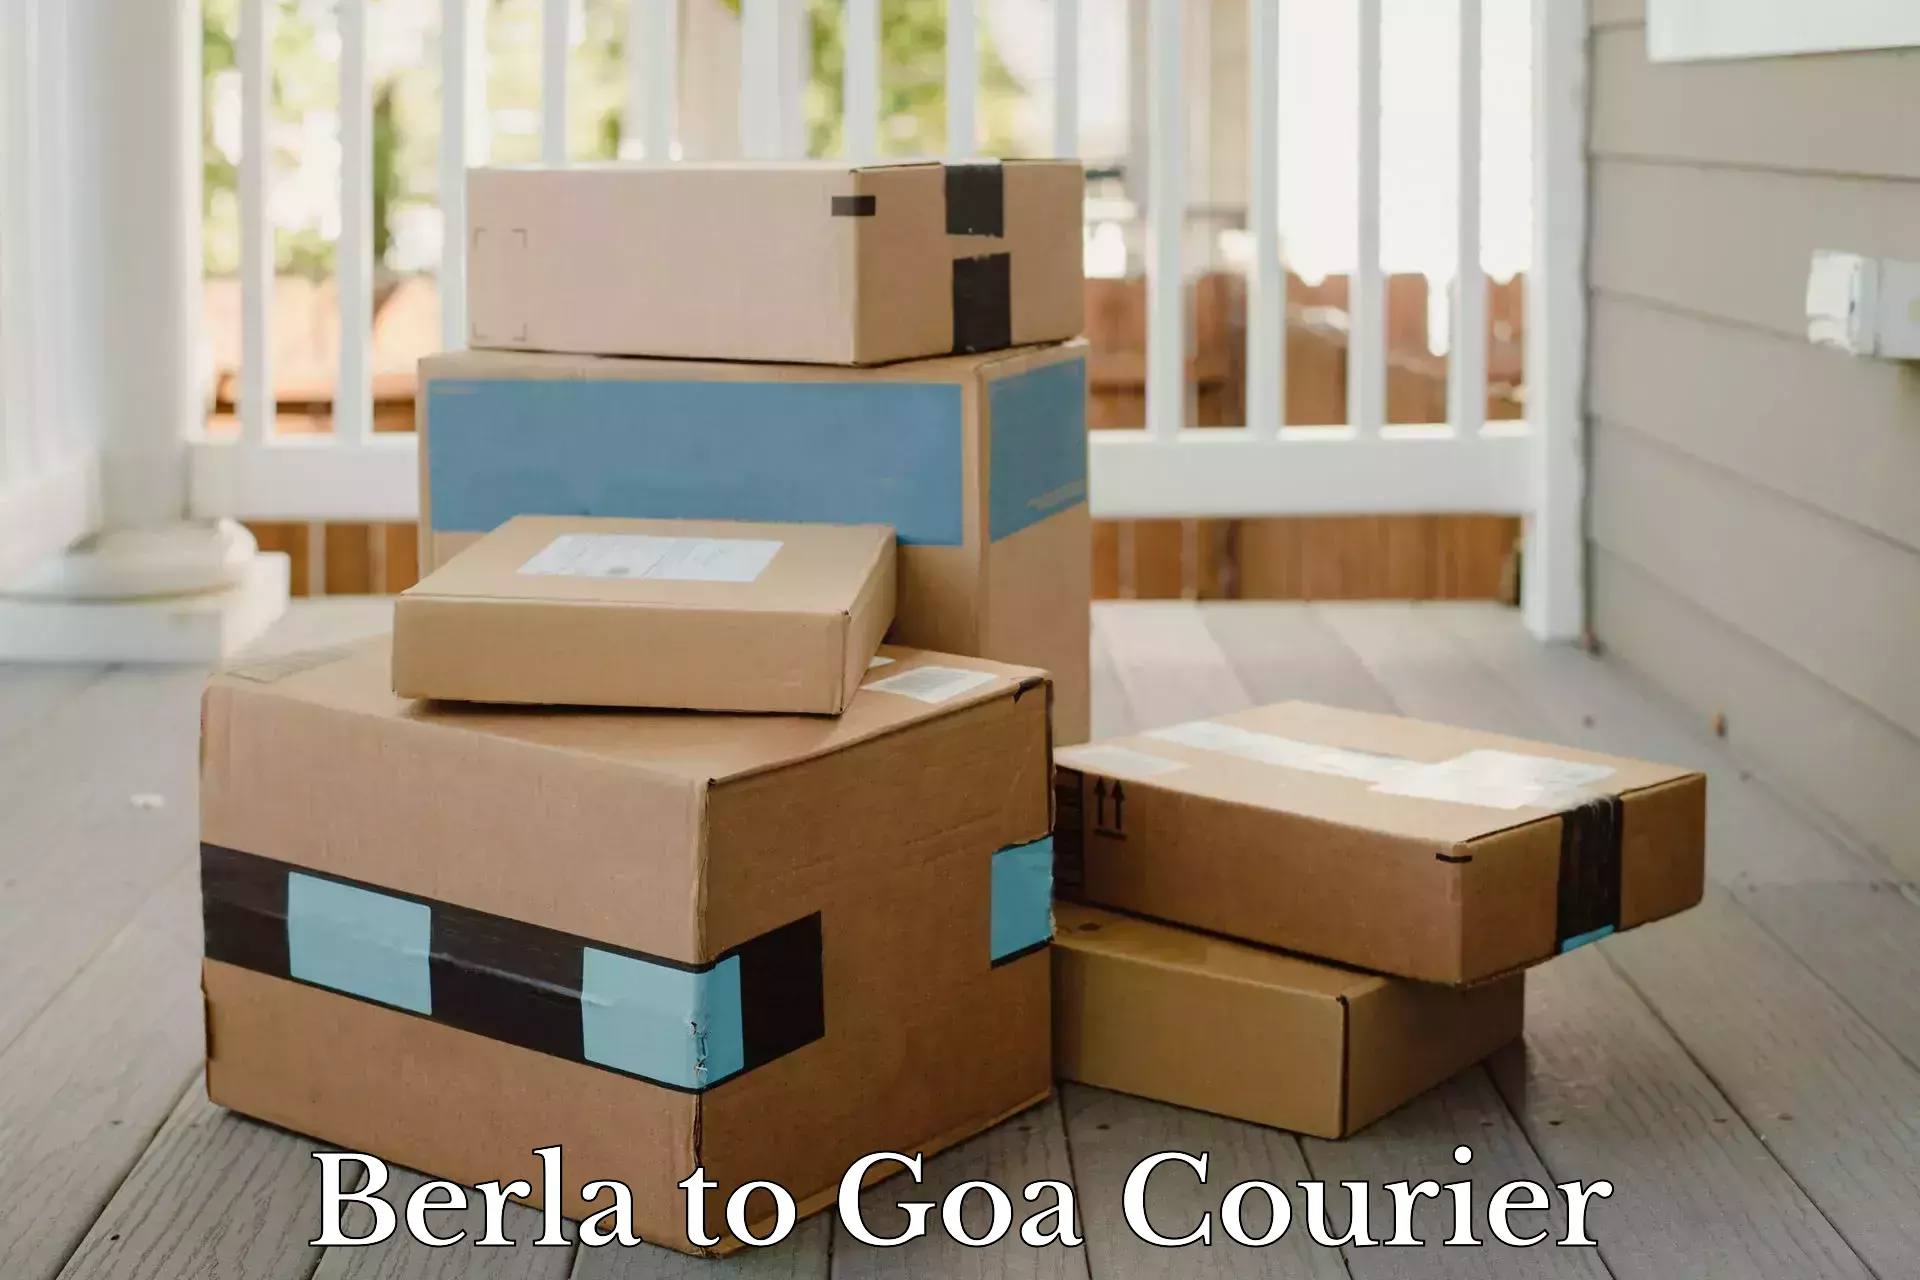 Courier service comparison in Berla to Goa